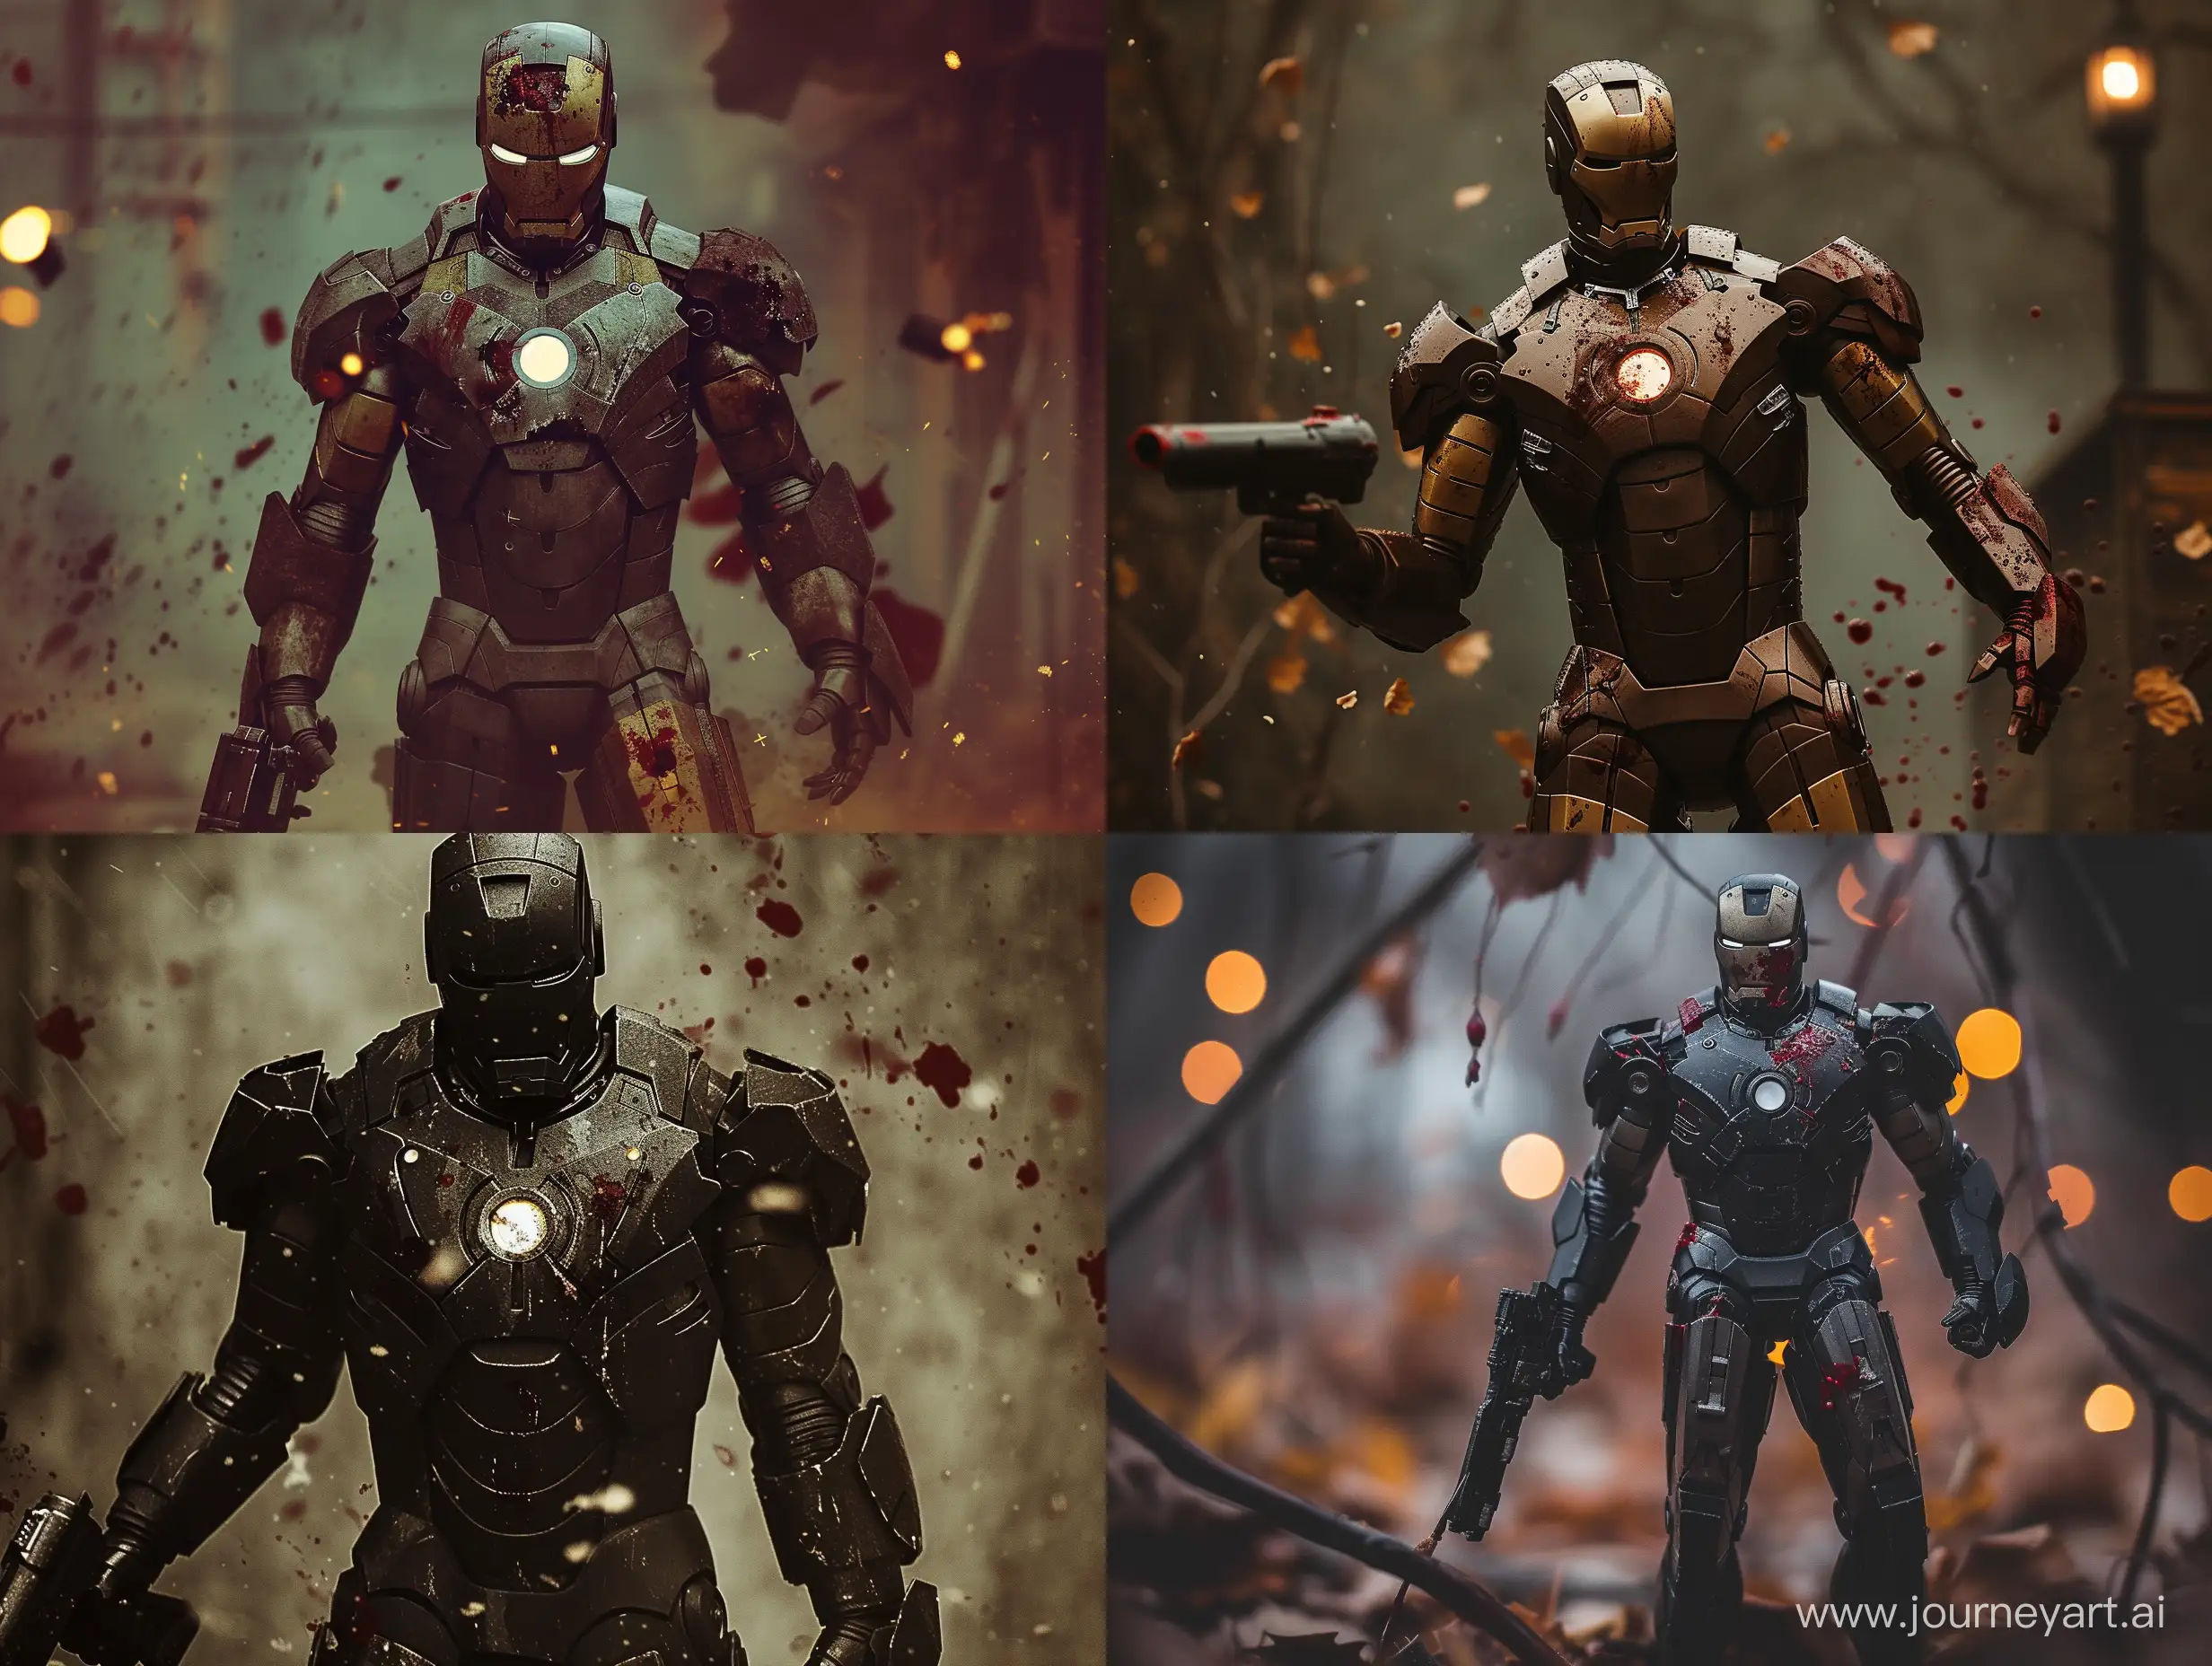 Disturbing-Dystopian-Iron-Man-in-Gruesome-Battle-Scene